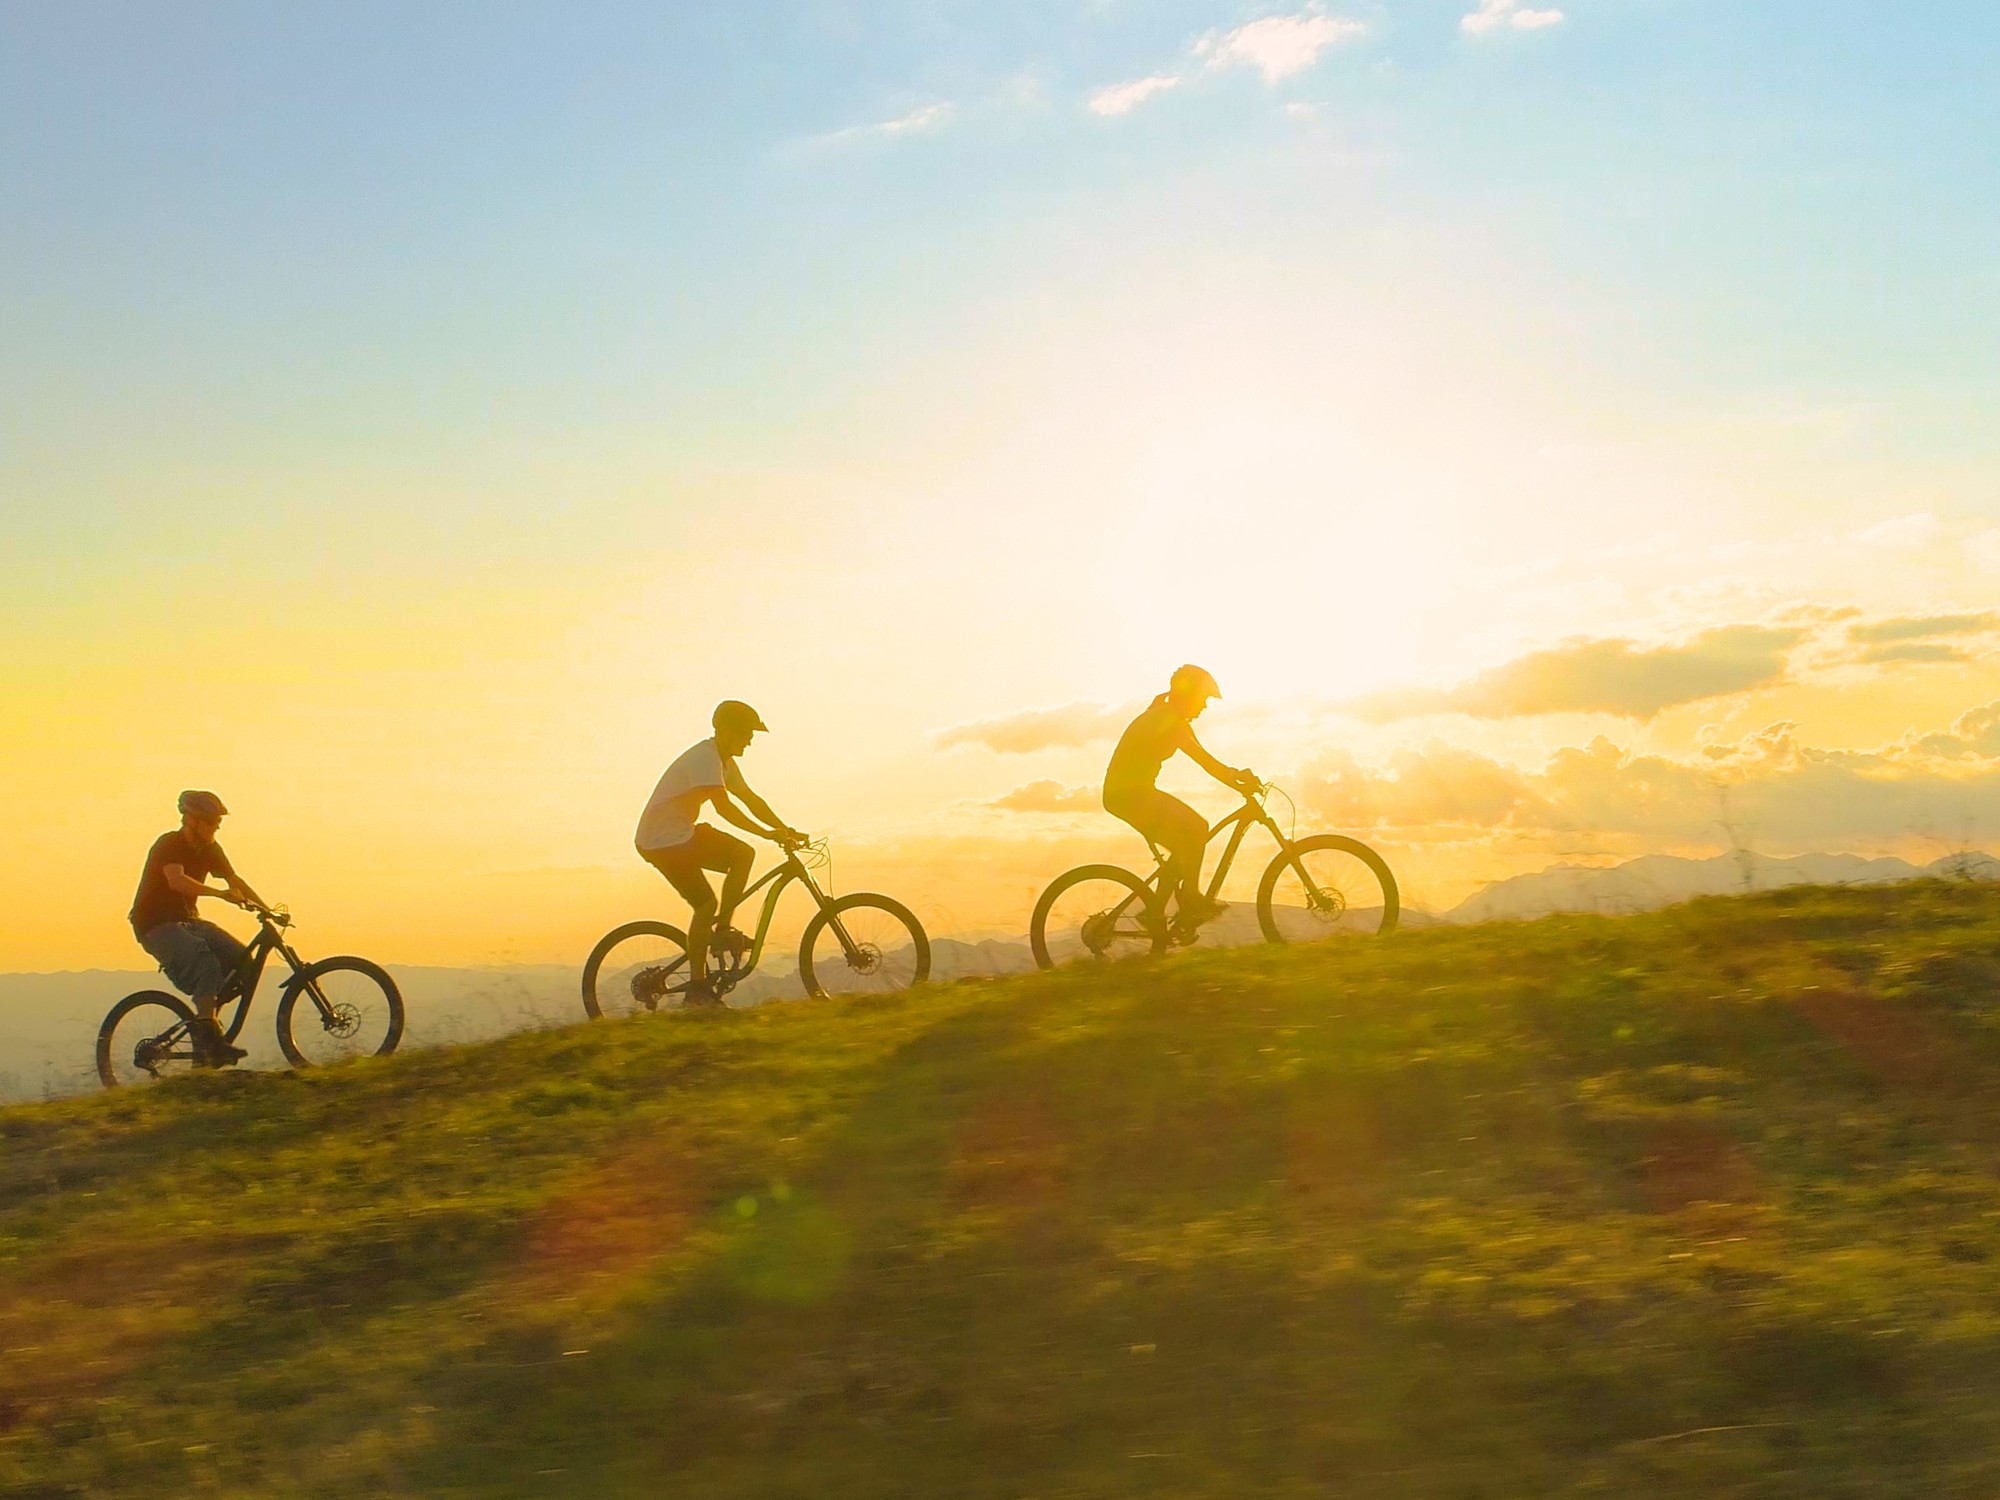 Encantos bonaerenses sobre dos ruedas: tres pueblos ideales para recorrer en bicicleta